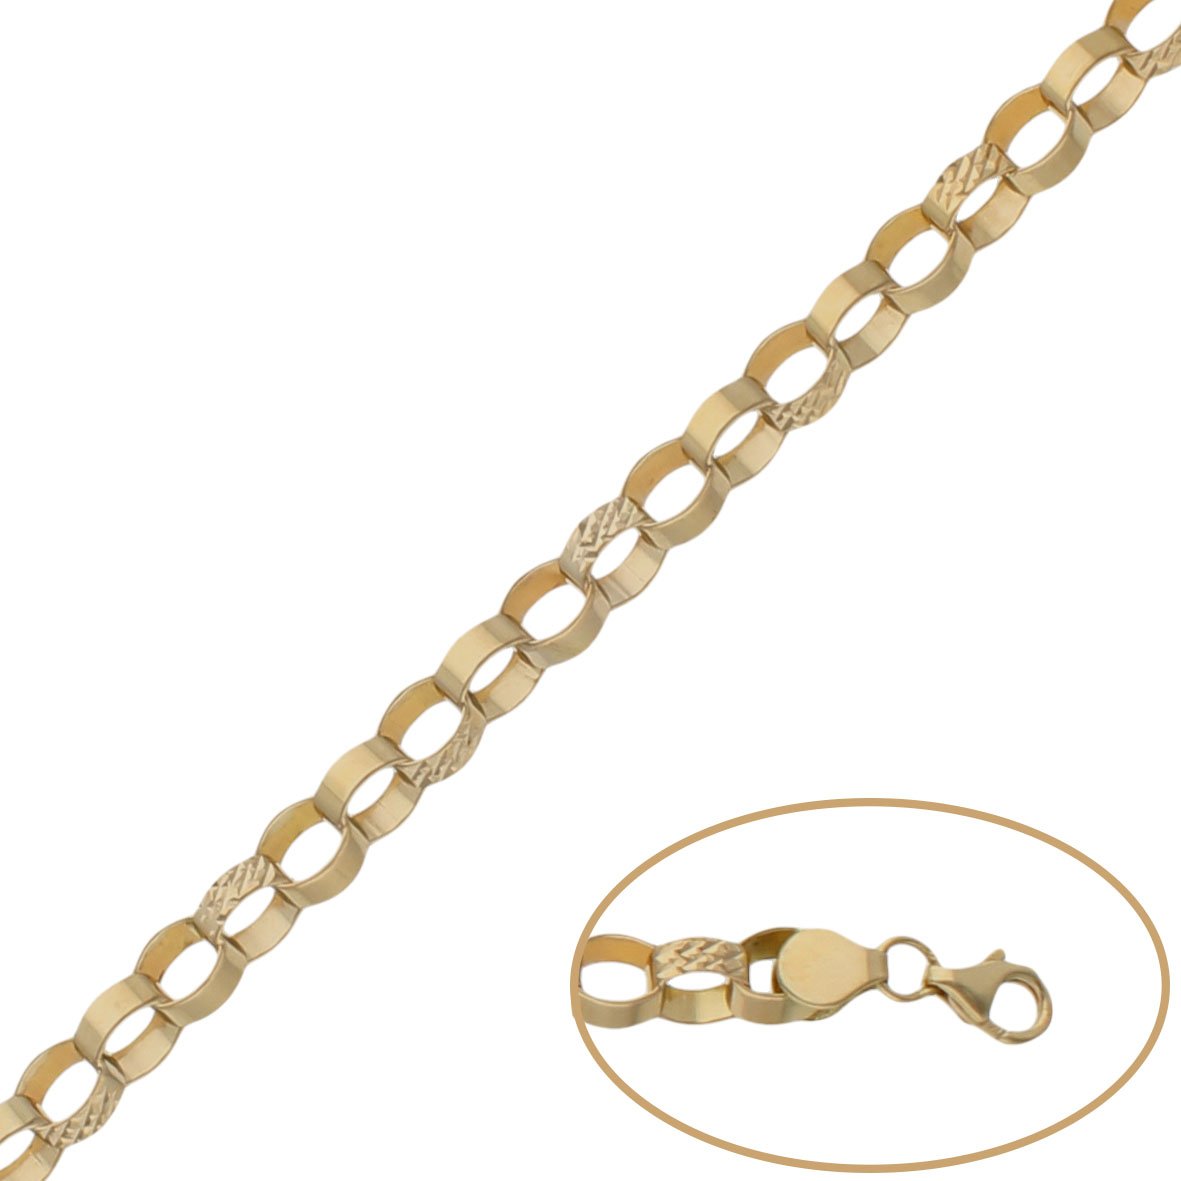 ❤️ Pulsera oro 18k eslabón mujer | Comprar pulsera de oro – Joyeria Zeller